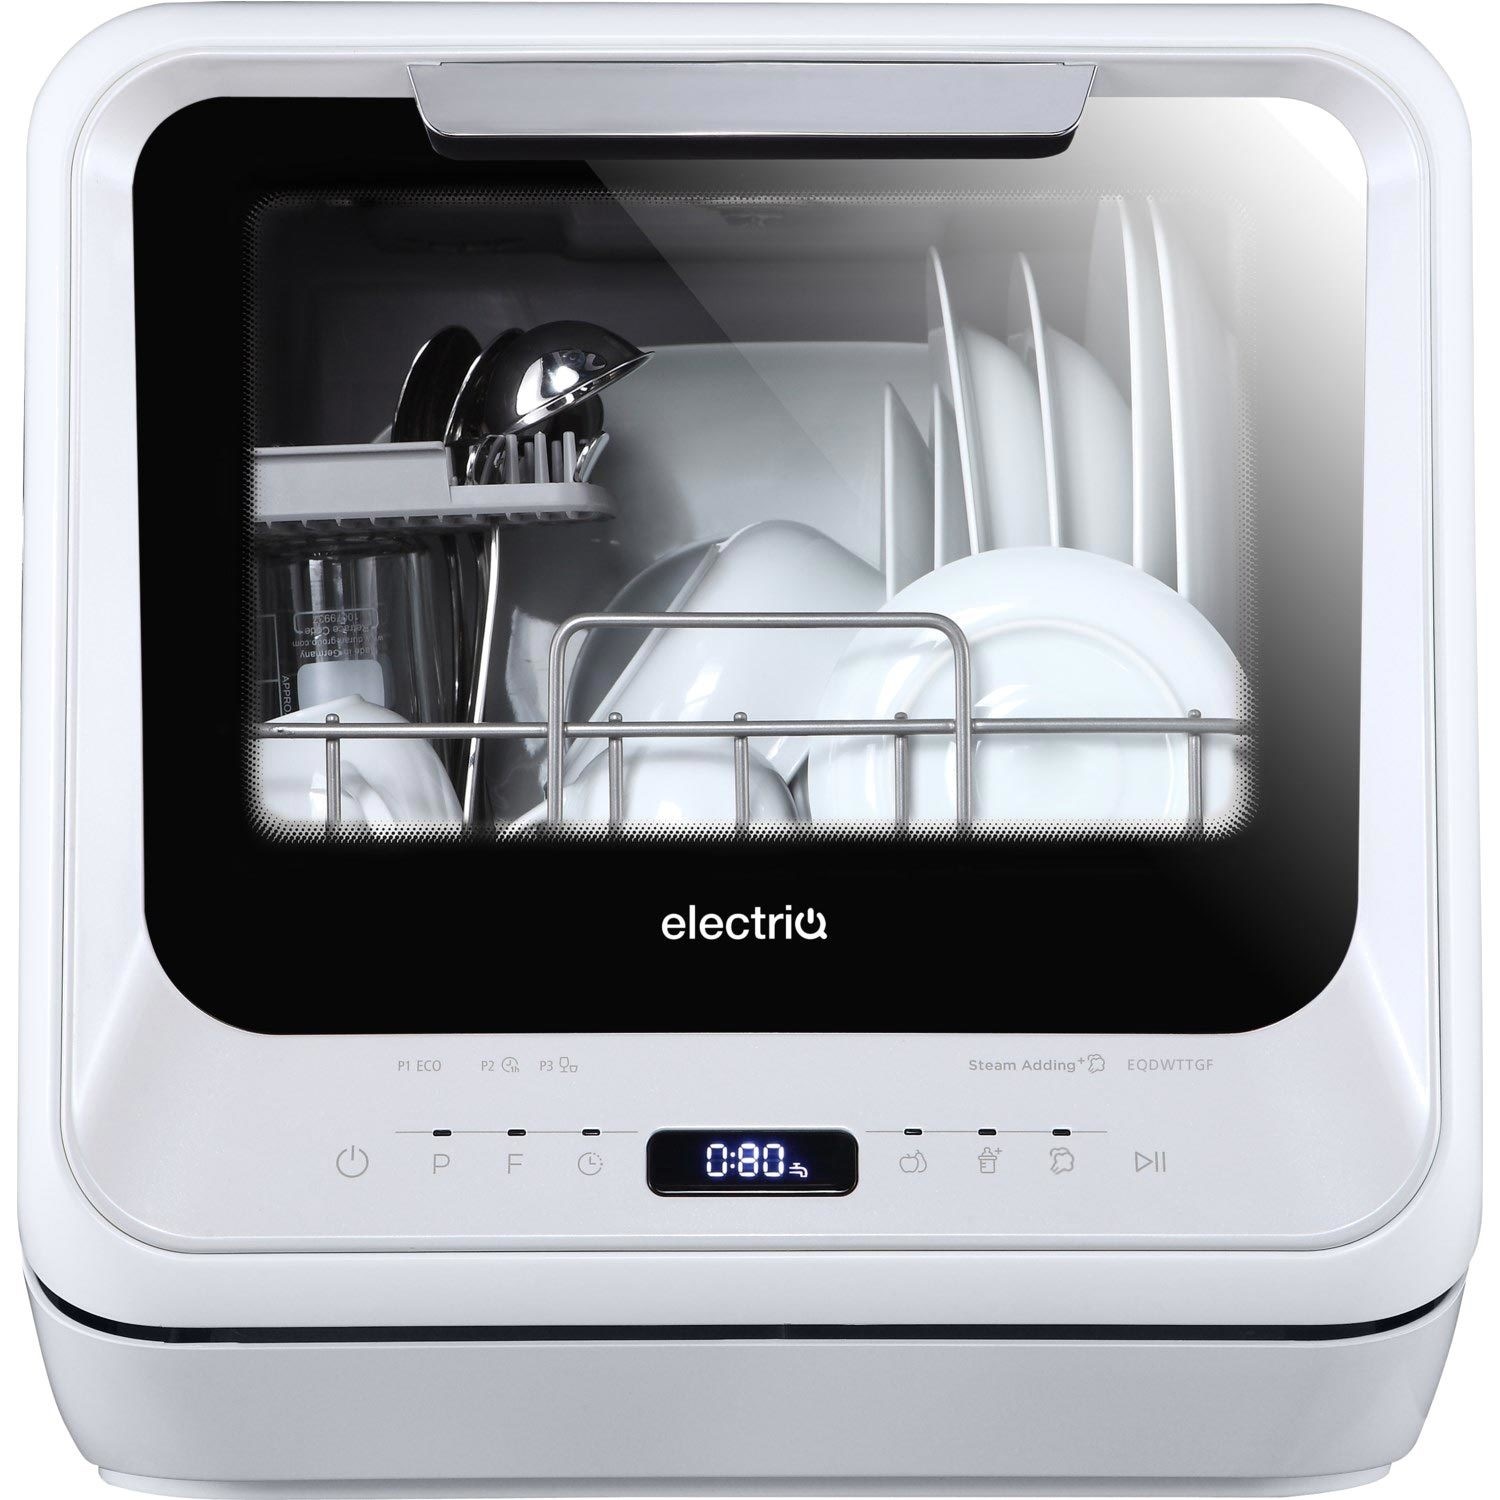 electriQ 2 Place Settings Freestanding Mini Table Top Dishwasher - White